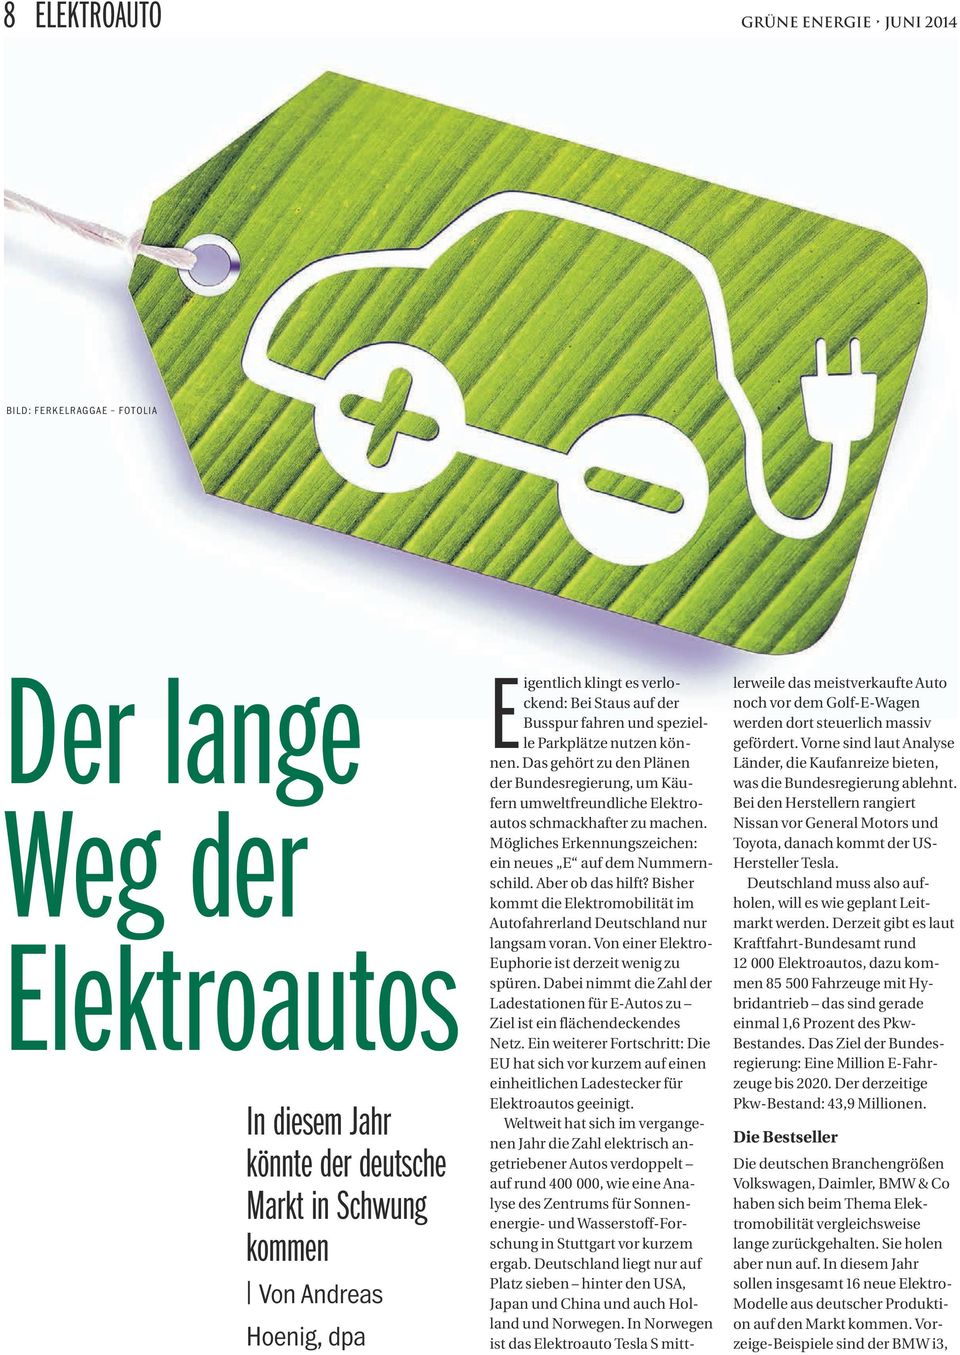 Mögliches Erkennungszeichen: ein neues E auf dem Nummernschild. Aber ob das hilft? Bisher kommt die Elektromobilität im Autofahrerland Deutschland nur langsam voran.